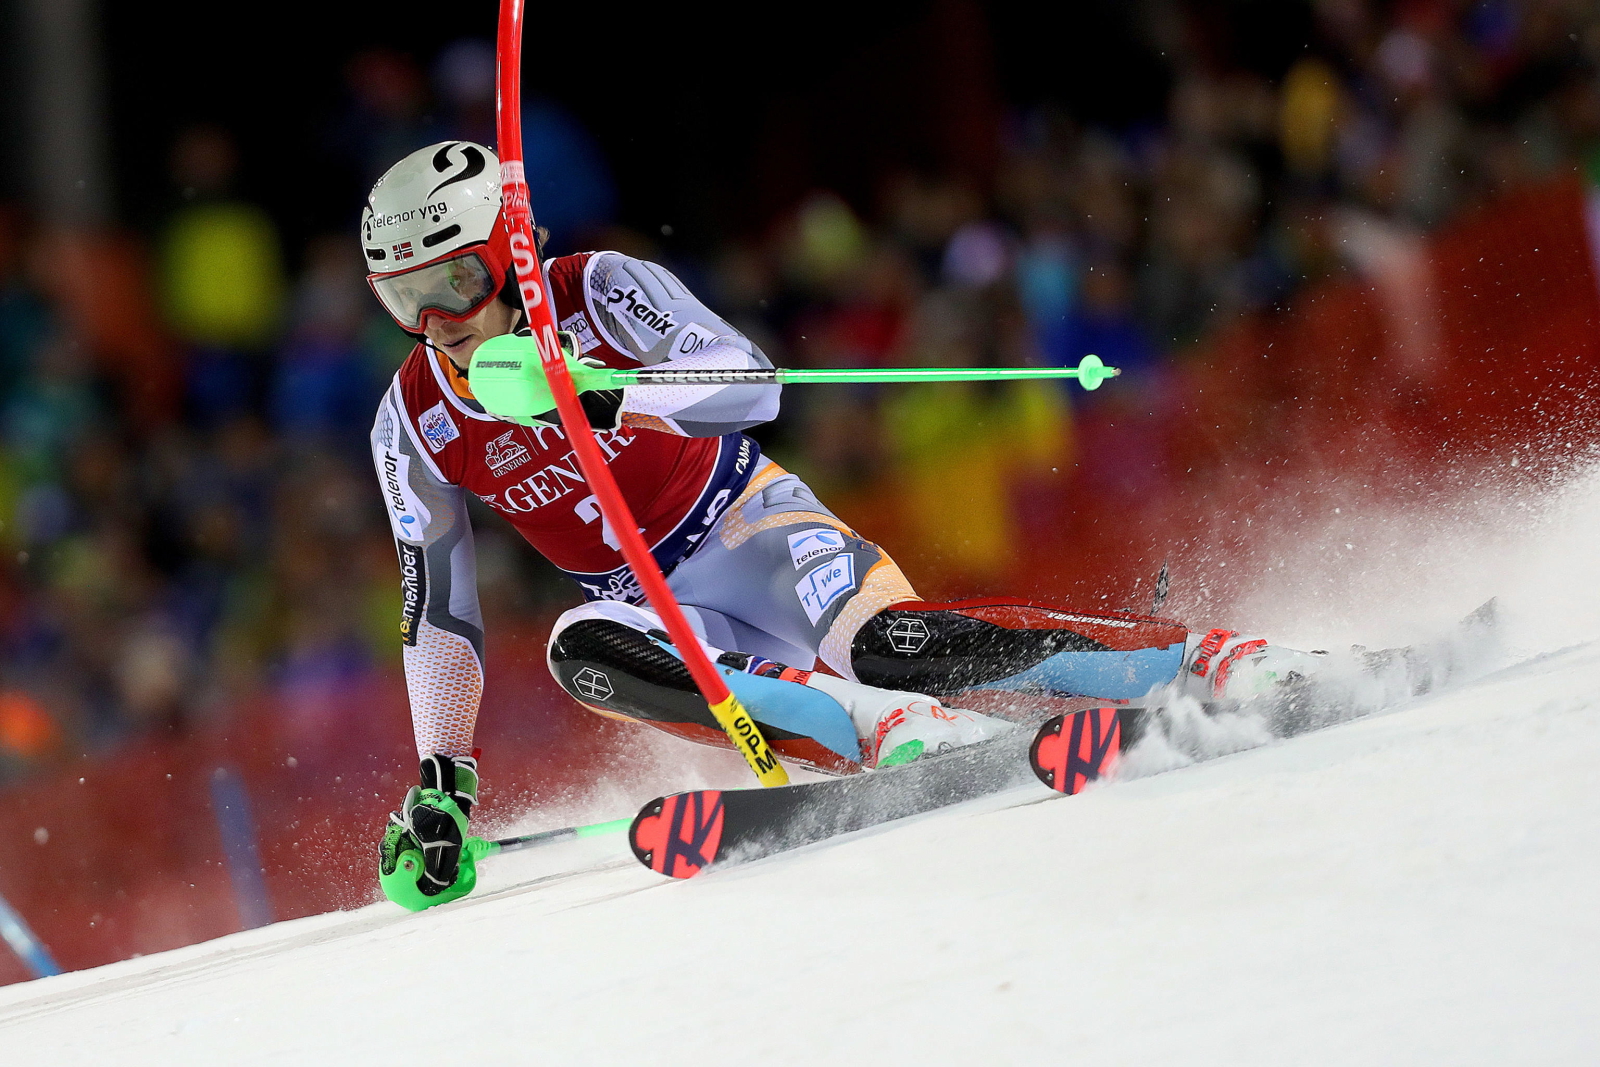 Puchar Świata w narciarstwie. fot. EPA/ANDREA SOLERO